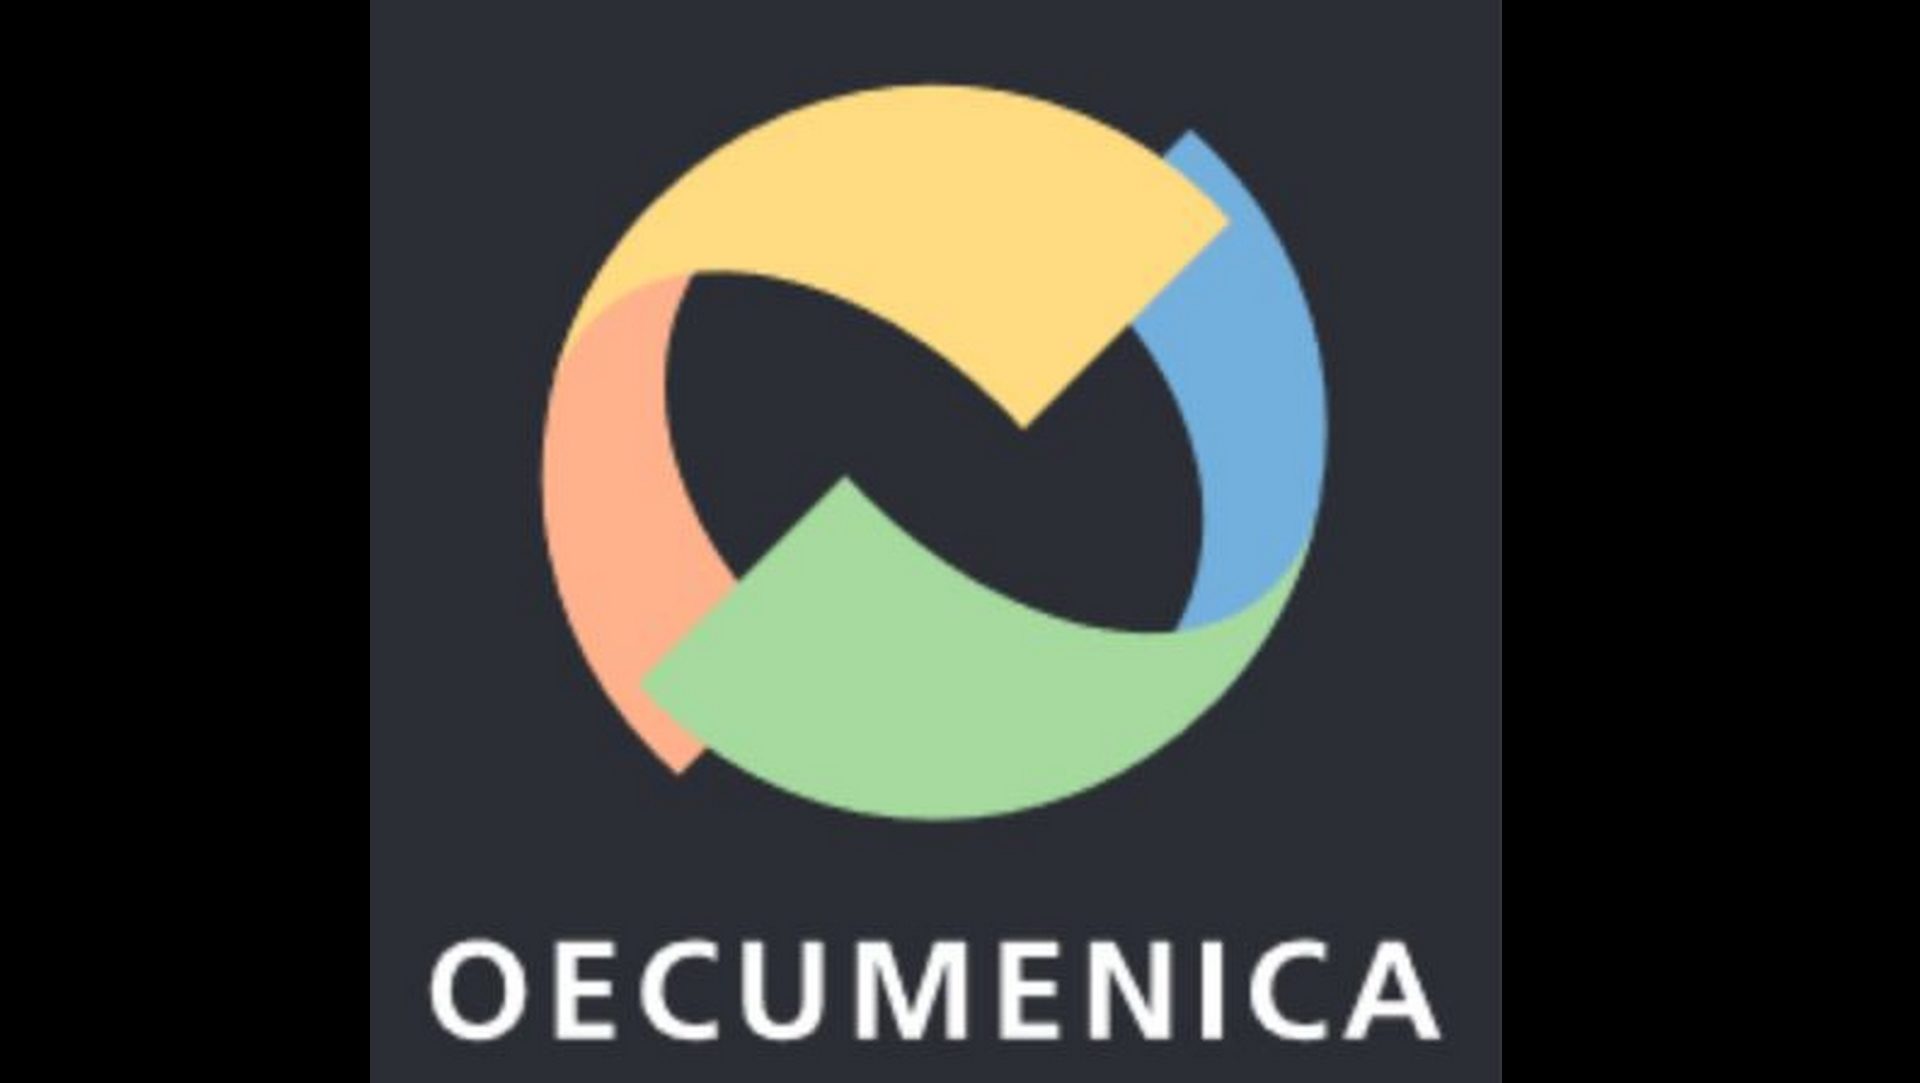 Le label Oecumenica décerné par la Communauté de travail des Eglises chrétiennes de Suisse (CTEC)